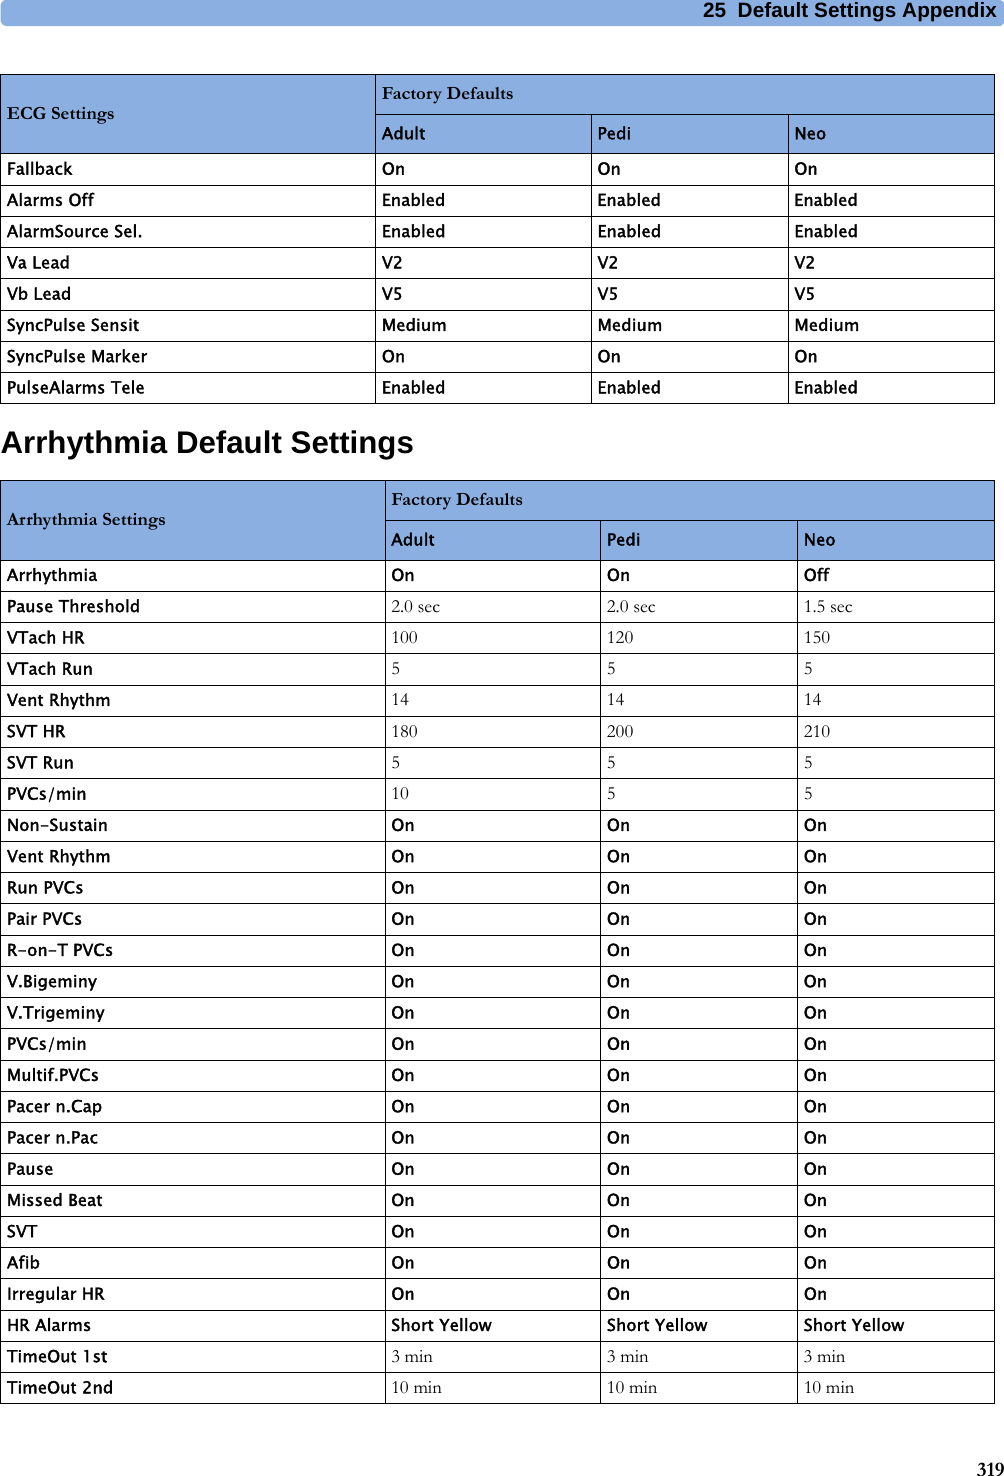 25 Default Settings Appendix319Arrhythmia Default SettingsFallback On On OnAlarms Off Enabled Enabled EnabledAlarmSource Sel. Enabled Enabled EnabledVa Lead V2 V2 V2Vb Lead V5 V5 V5SyncPulse Sensit Medium Medium MediumSyncPulse Marker On On OnPulseAlarms Tele Enabled Enabled EnabledECG SettingsFactory DefaultsAdult Pedi NeoArrhythmia SettingsFactory DefaultsAdult Pedi NeoArrhythmia On On OffPause Threshold 2.0 sec 2.0 sec 1.5 secVTach HR 100 120 150VTach Run 555Vent Rhythm 14 14 14SVT HR 180 200 210SVT Run 555PVCs/min 10 5 5Non-Sustain On On OnVent Rhythm On On OnRun PVCs On On OnPair PVCs On On OnR-on-T PVCs On On OnV.Bigeminy On On OnV.Trigeminy On On OnPVCs/min On On OnMultif.PVCs On On OnPacer n.Cap On On OnPacer n.Pac On On OnPause On On OnMissed Beat On On OnSVT On On OnAfib On On OnIrregular HR On On OnHR Alarms Short Yellow Short Yellow Short YellowTimeOut 1st 3 min 3 min 3 minTimeOut 2nd 10 min 10 min 10 min